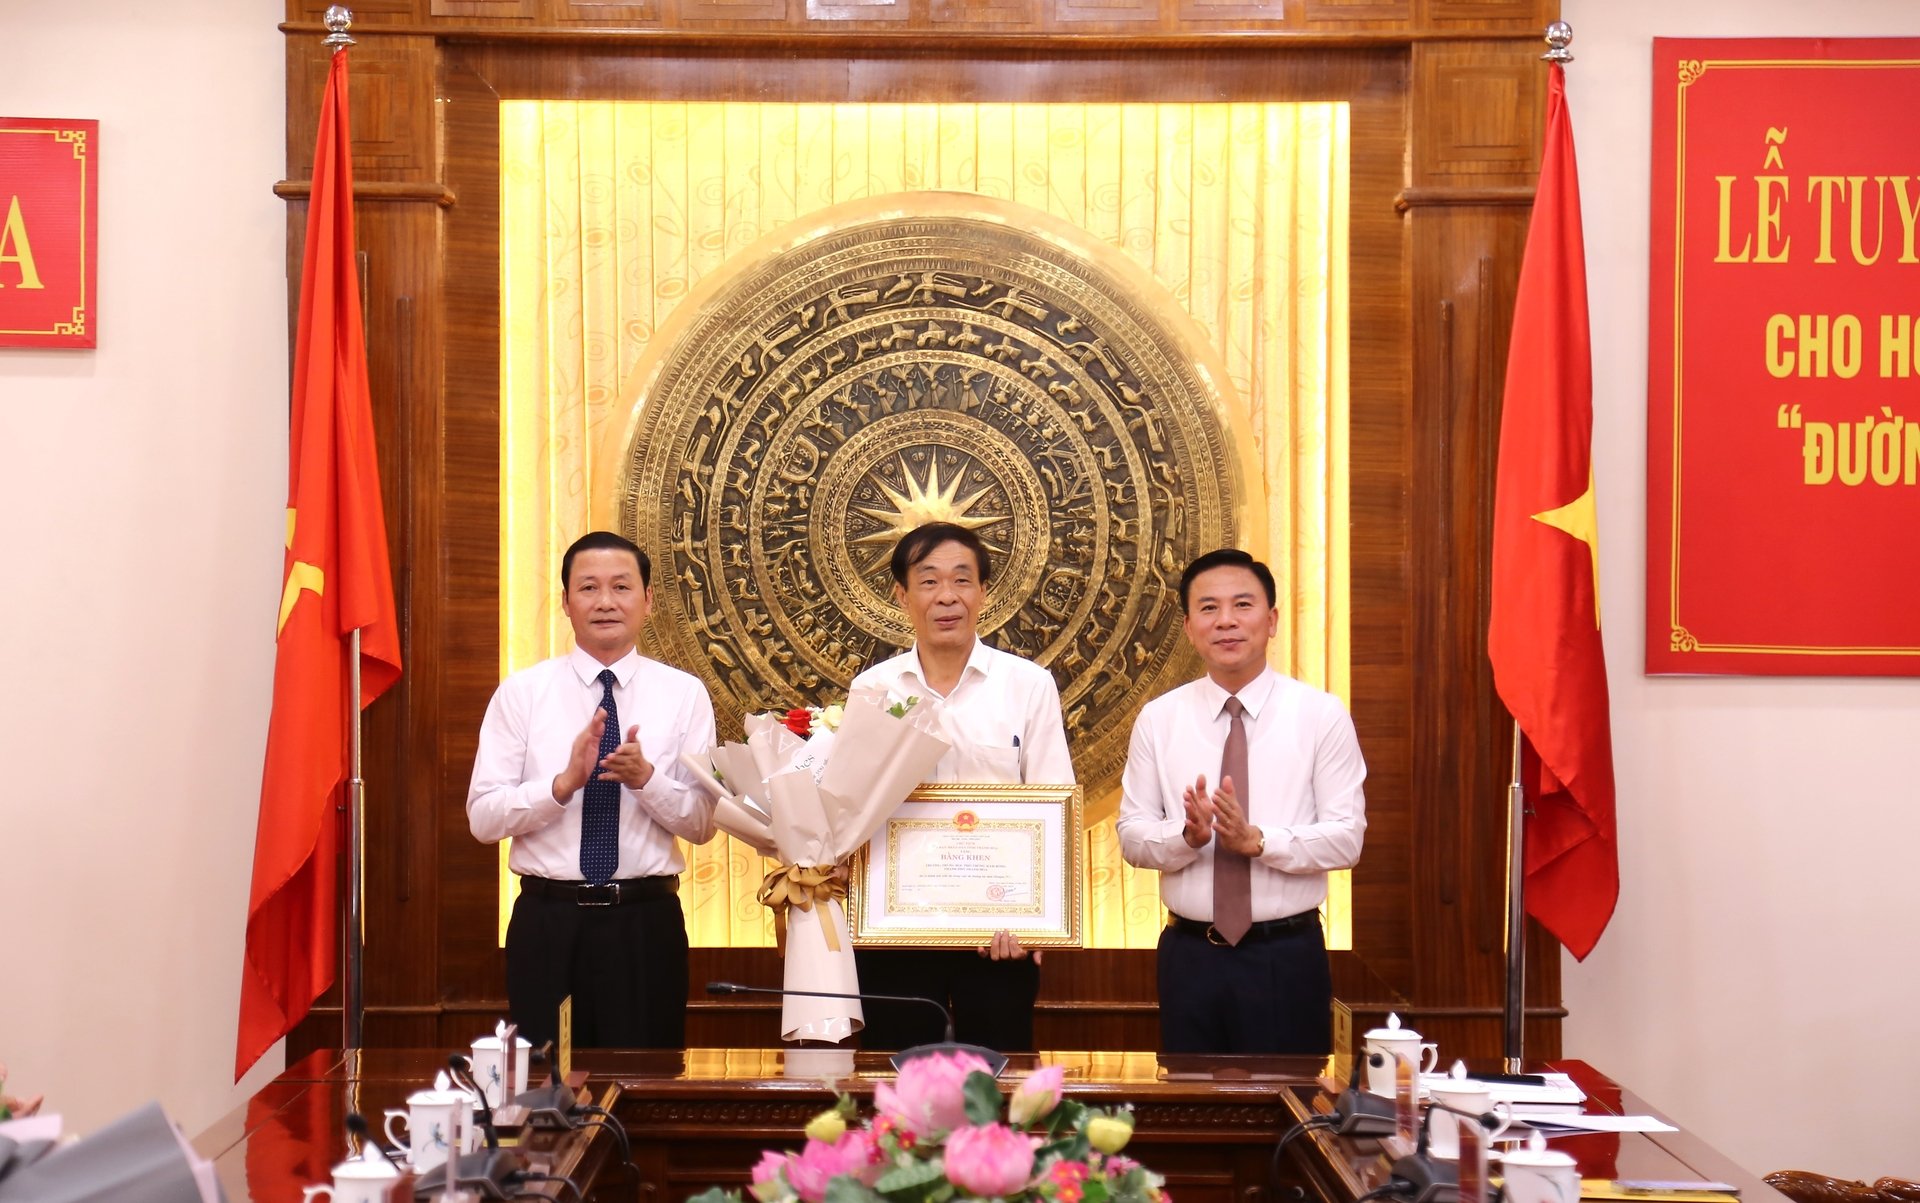 Bí thư Tỉnh ủy Đỗ Trọng Hưng và Chủ tịch UBND tỉnh Đỗ Minh Tuấn trao Bằng khen của Chủ tịch UBND tỉnh cho Trường THPT Hàm Rồng.